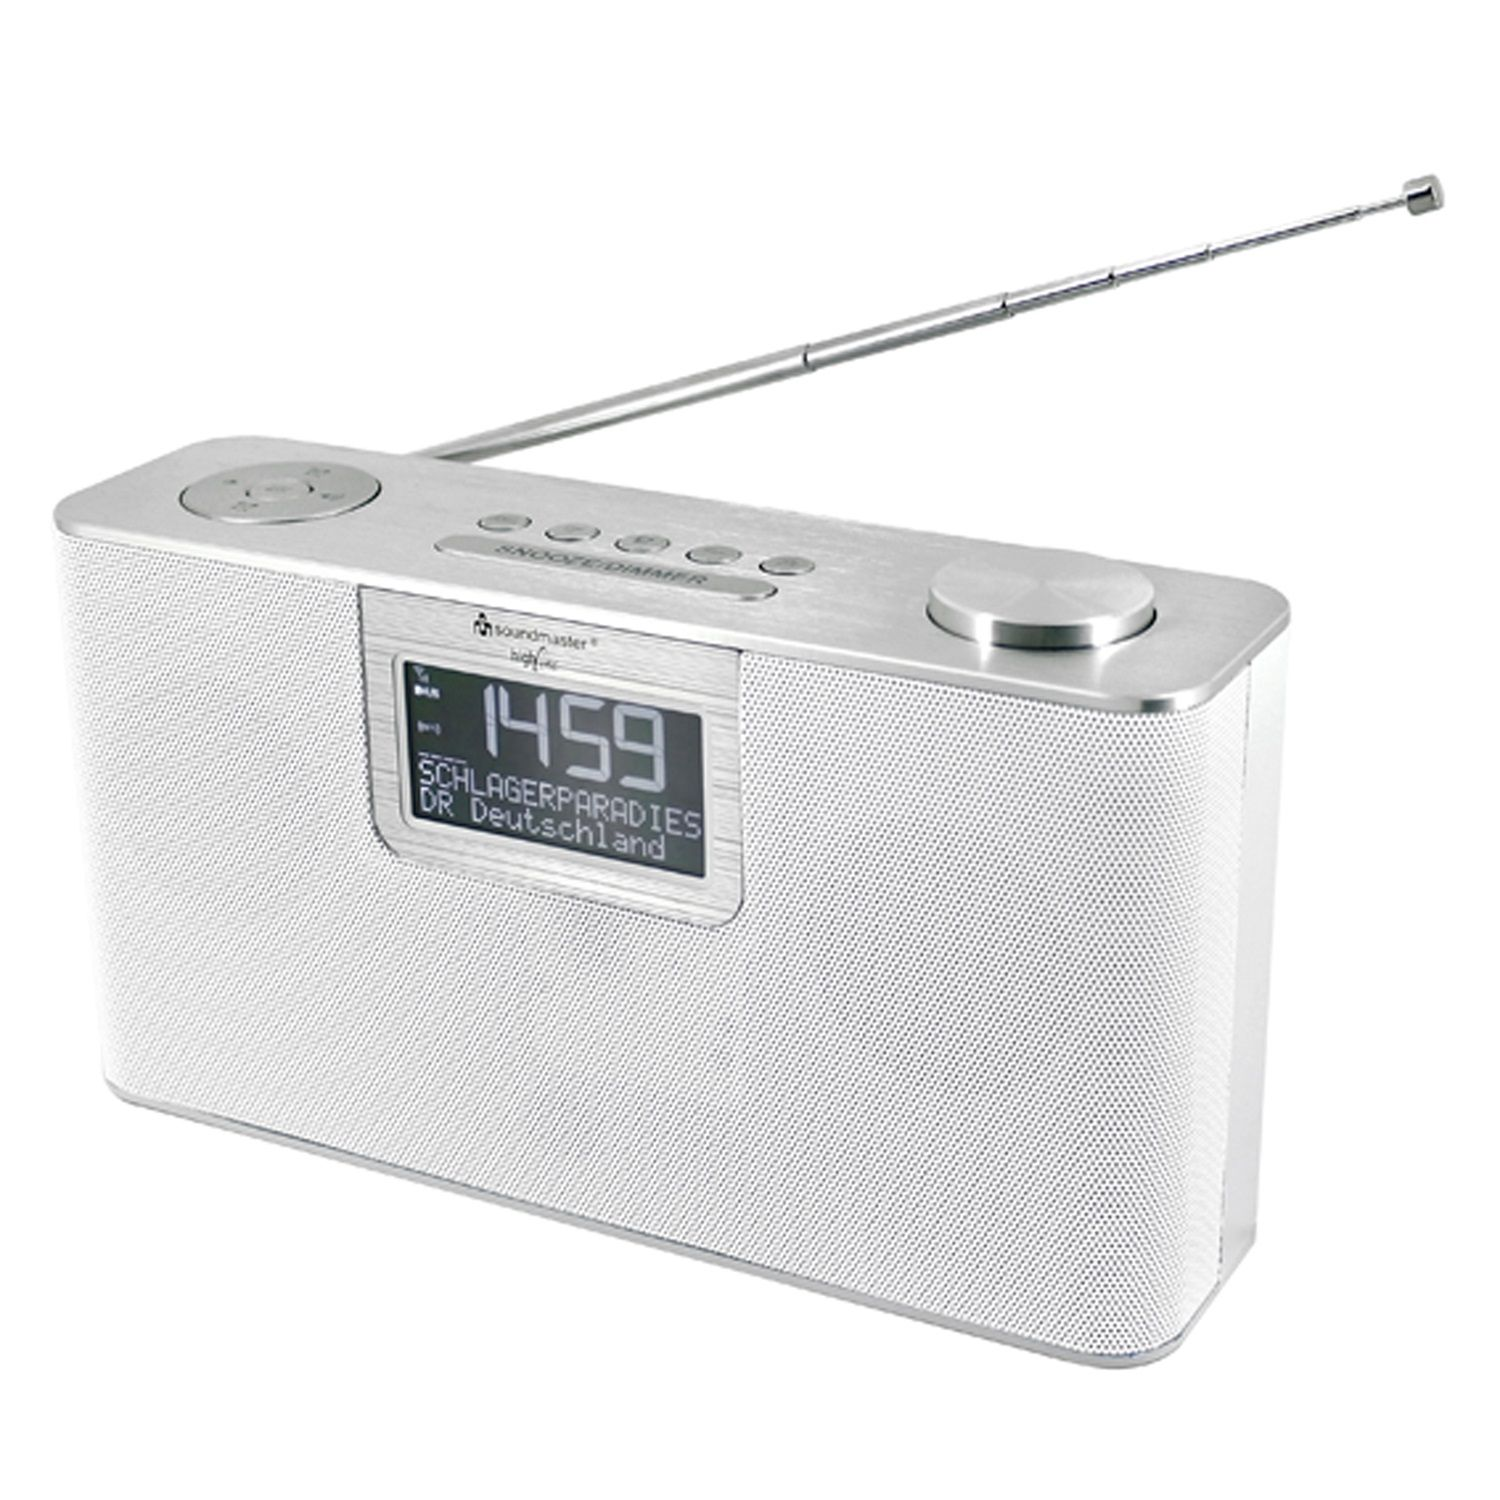 SOUNDMASTER DAB700WE DAB+, weiß FM, DAB+, AM, DAB, Multifunktionsradio, Bluetooth, FM